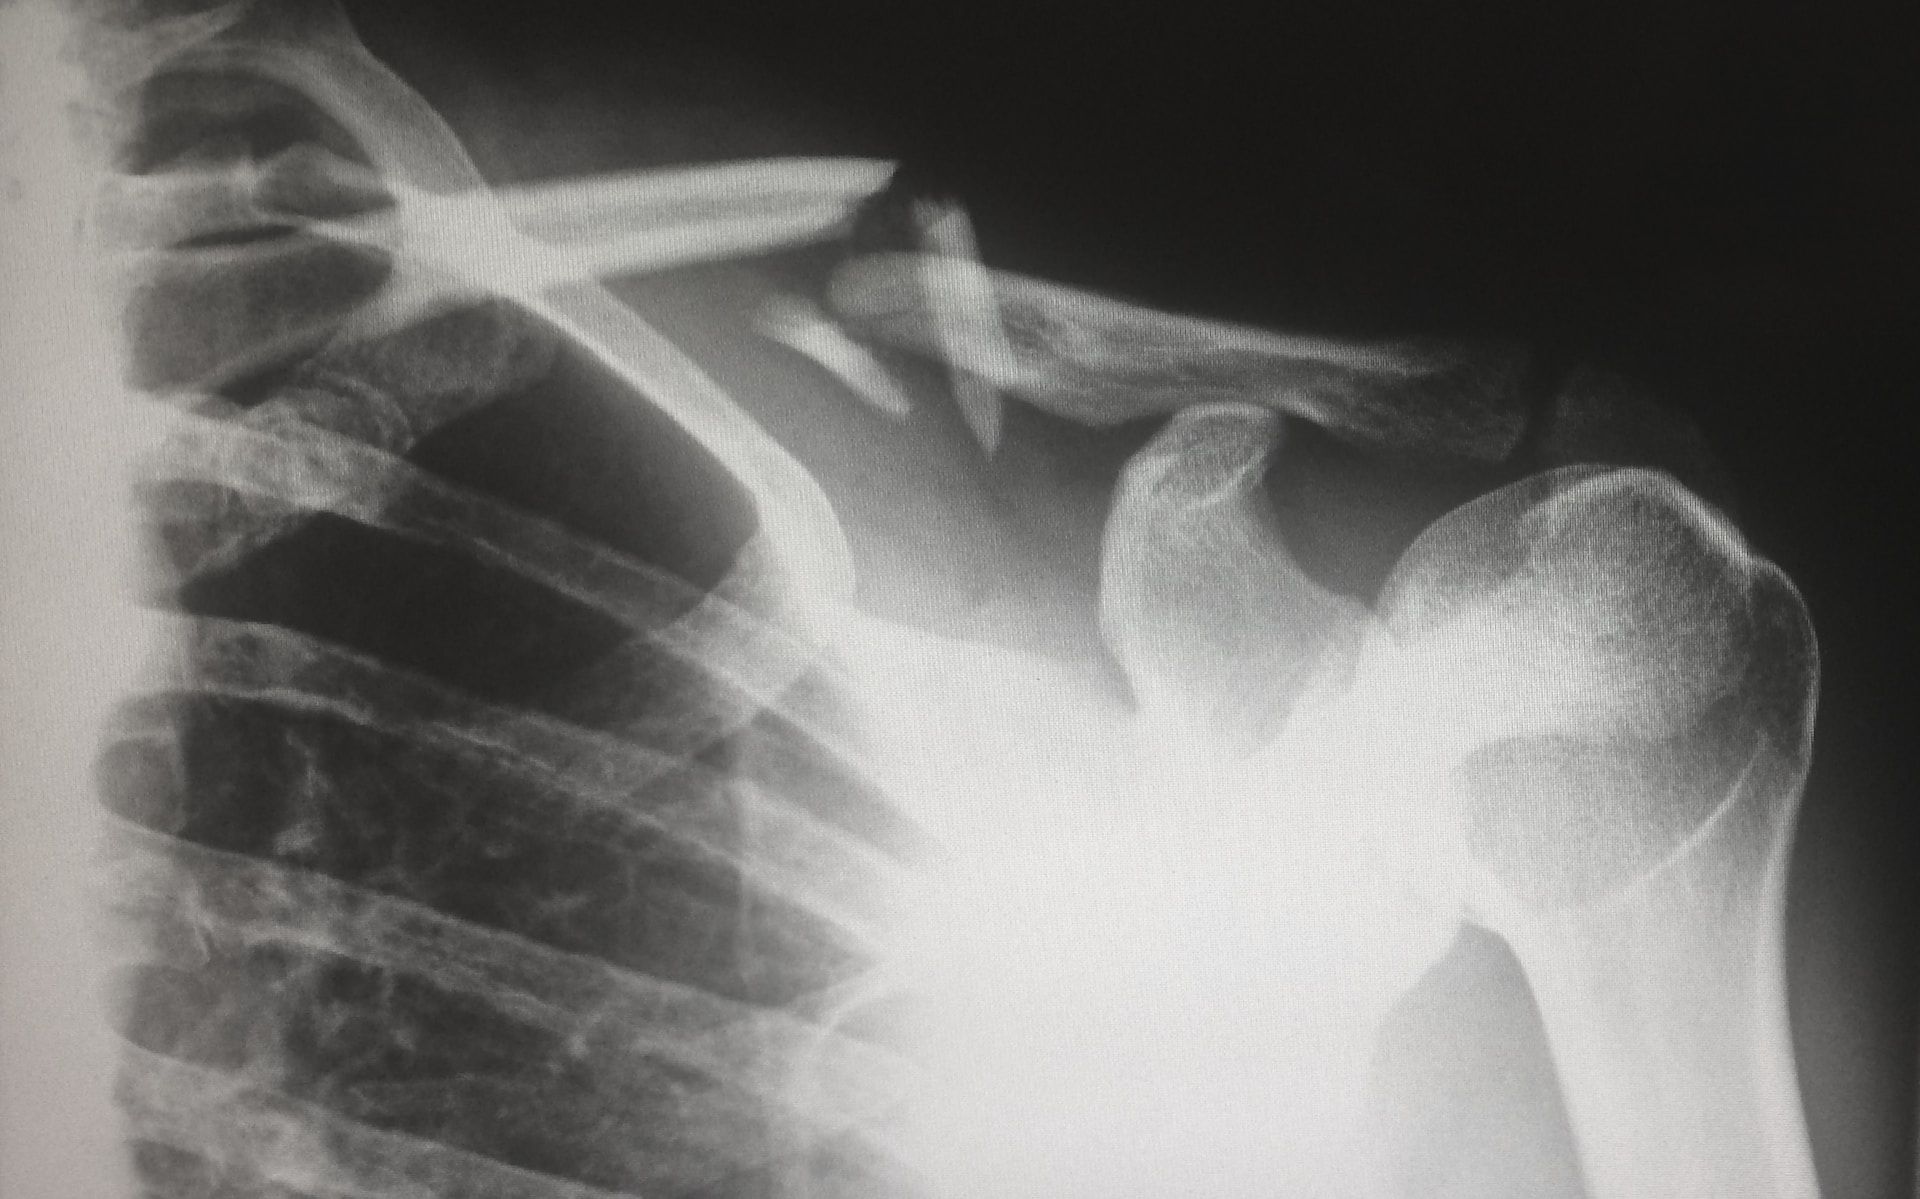 Avances: así son los nuevos tipos de implantes óseos creados para fortalecer los huesos dañados